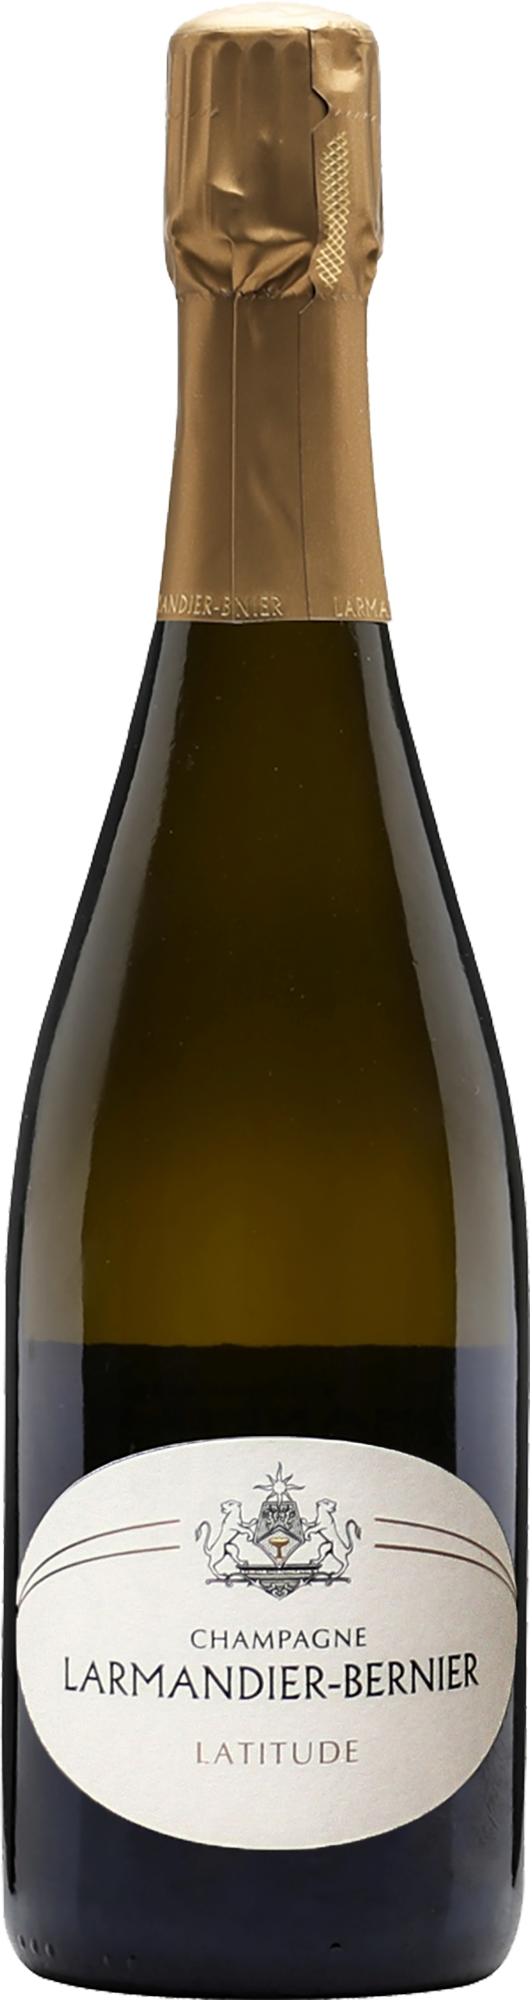 Champagne Larmandier-Bernier Latitude Blanc de Blancs NV (Base 18. Disg. Apr 2021)